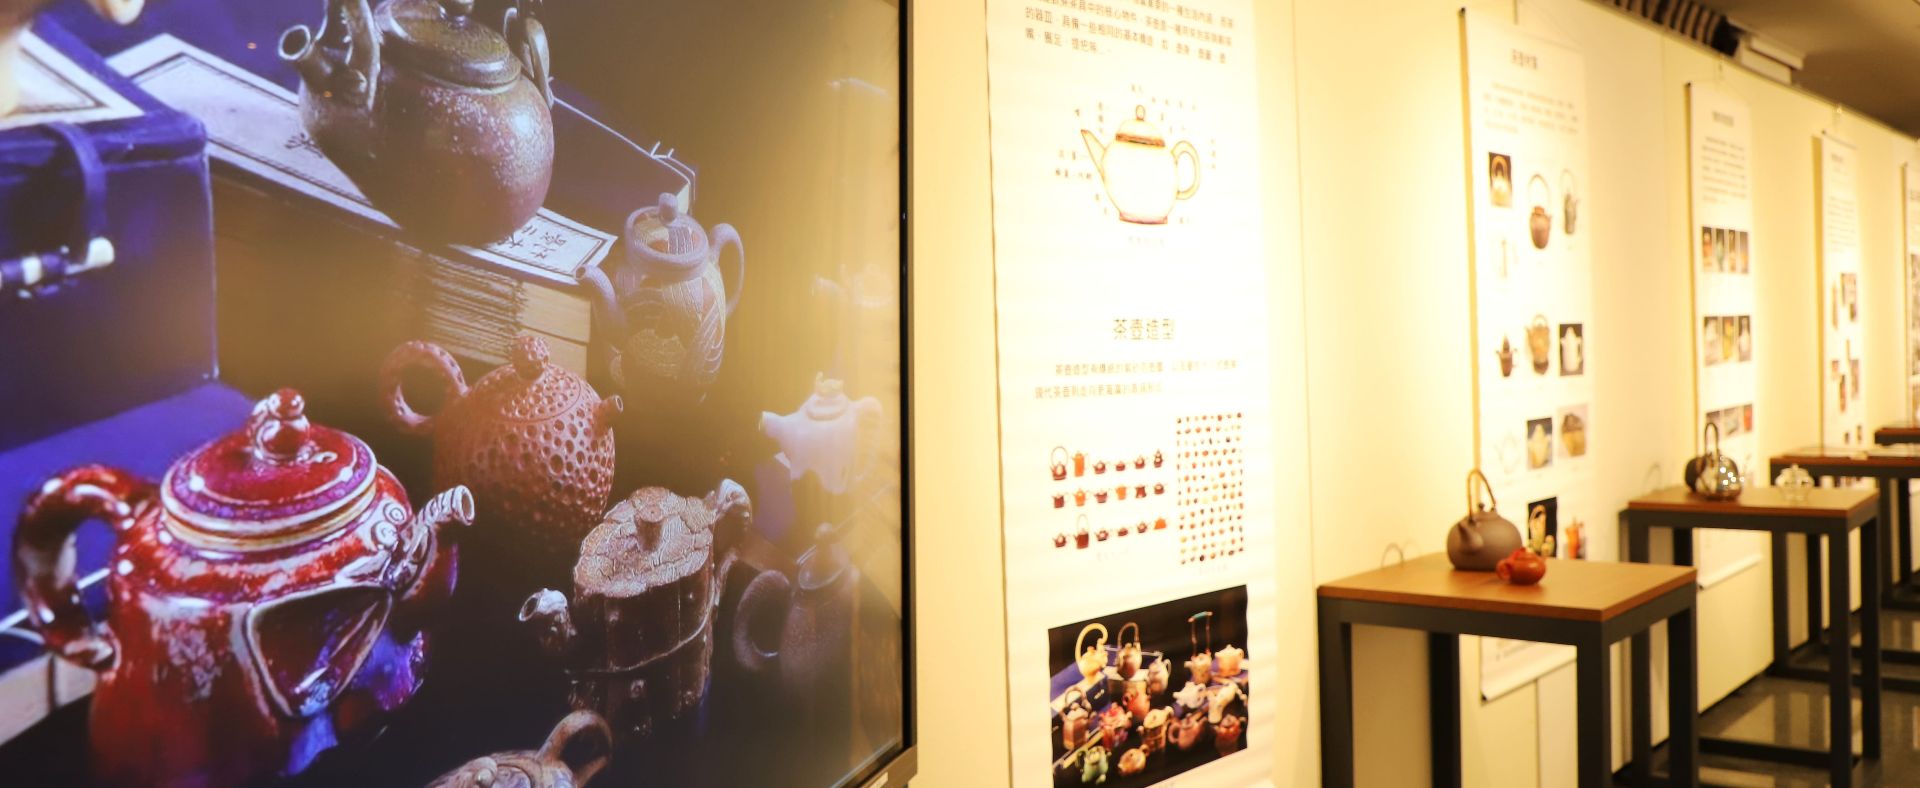 嘉大即日起於蘭潭校區圖書館展覽廳舉辦「台灣壺•數位美術館概念展」活動